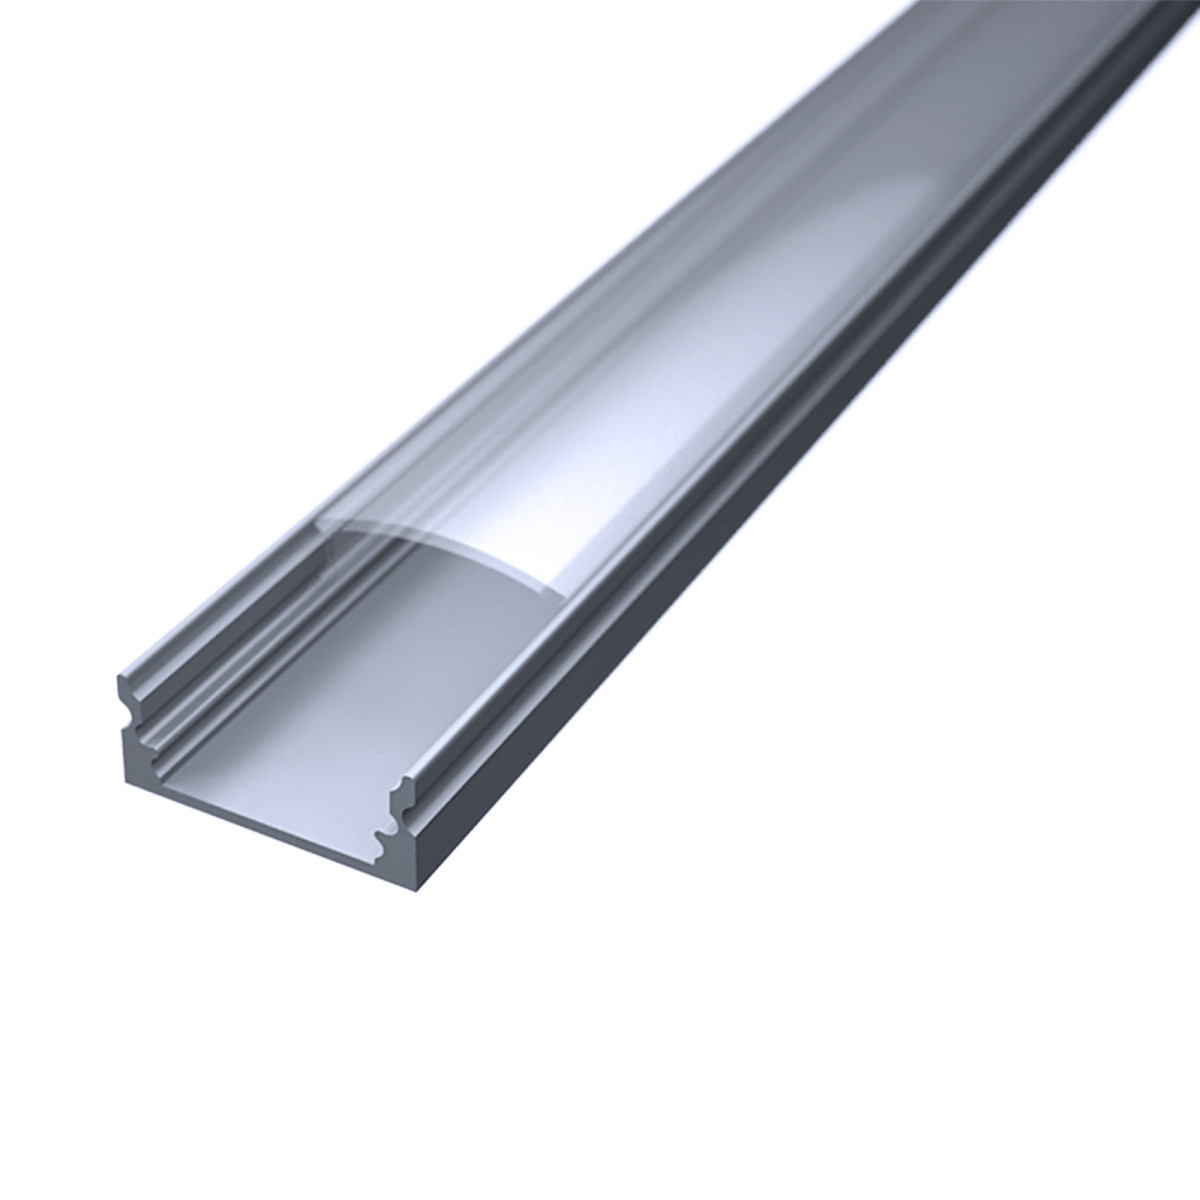 LED Flachprofil "Slim-Line" | Abdeckung transparent | Zuschnitt auf 134cm |